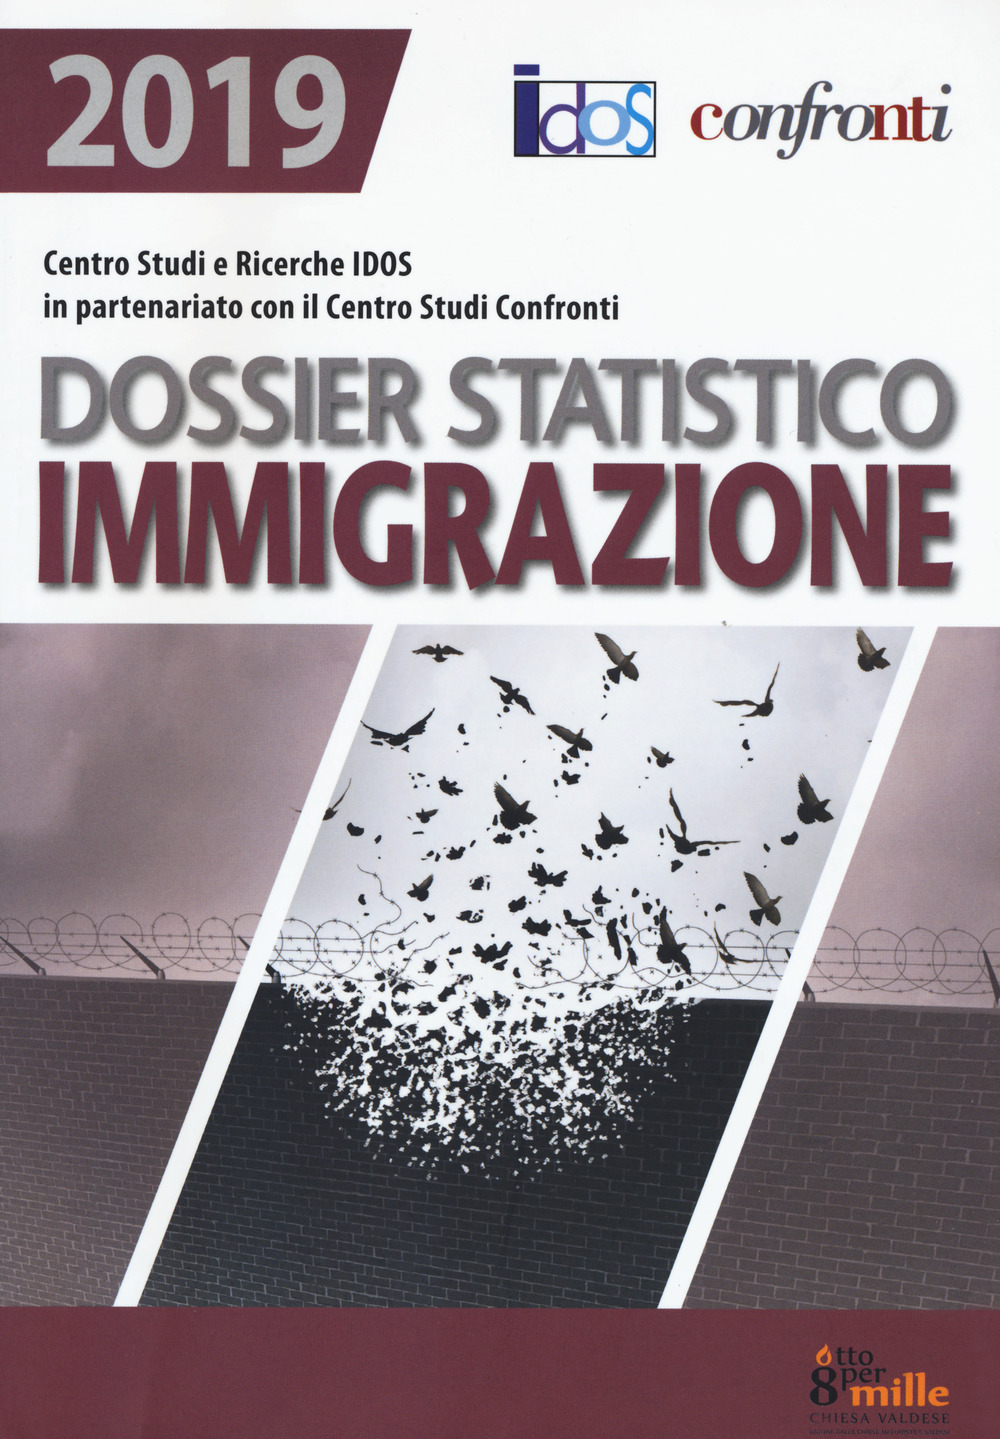 Dossier statistico immigrazione 2019